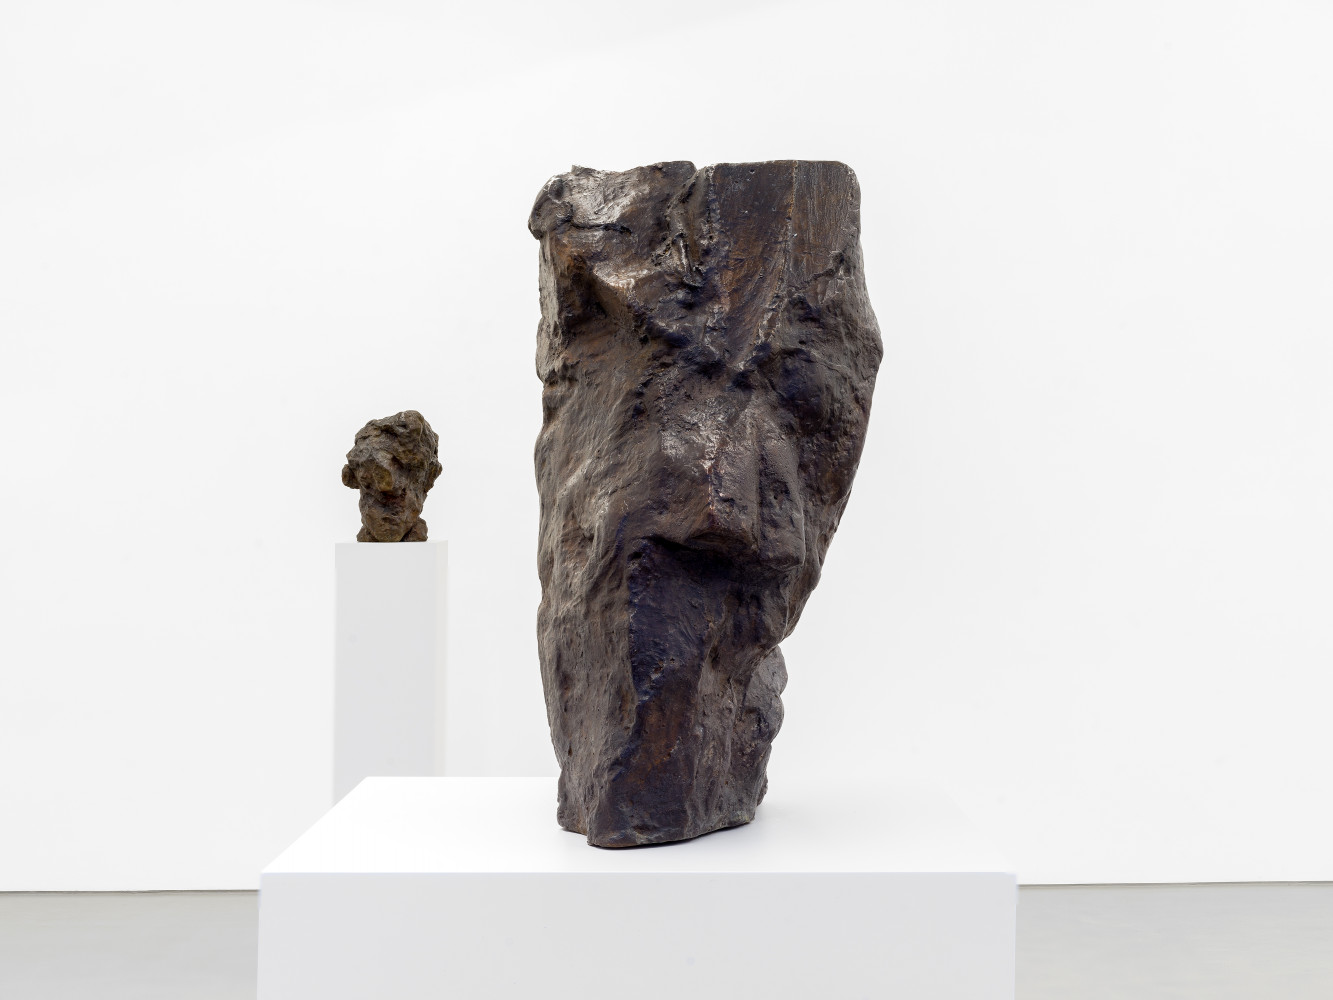 William Tucker, ‘Portraits and Masks’, Installation view, Buchmann Galerie, 2022